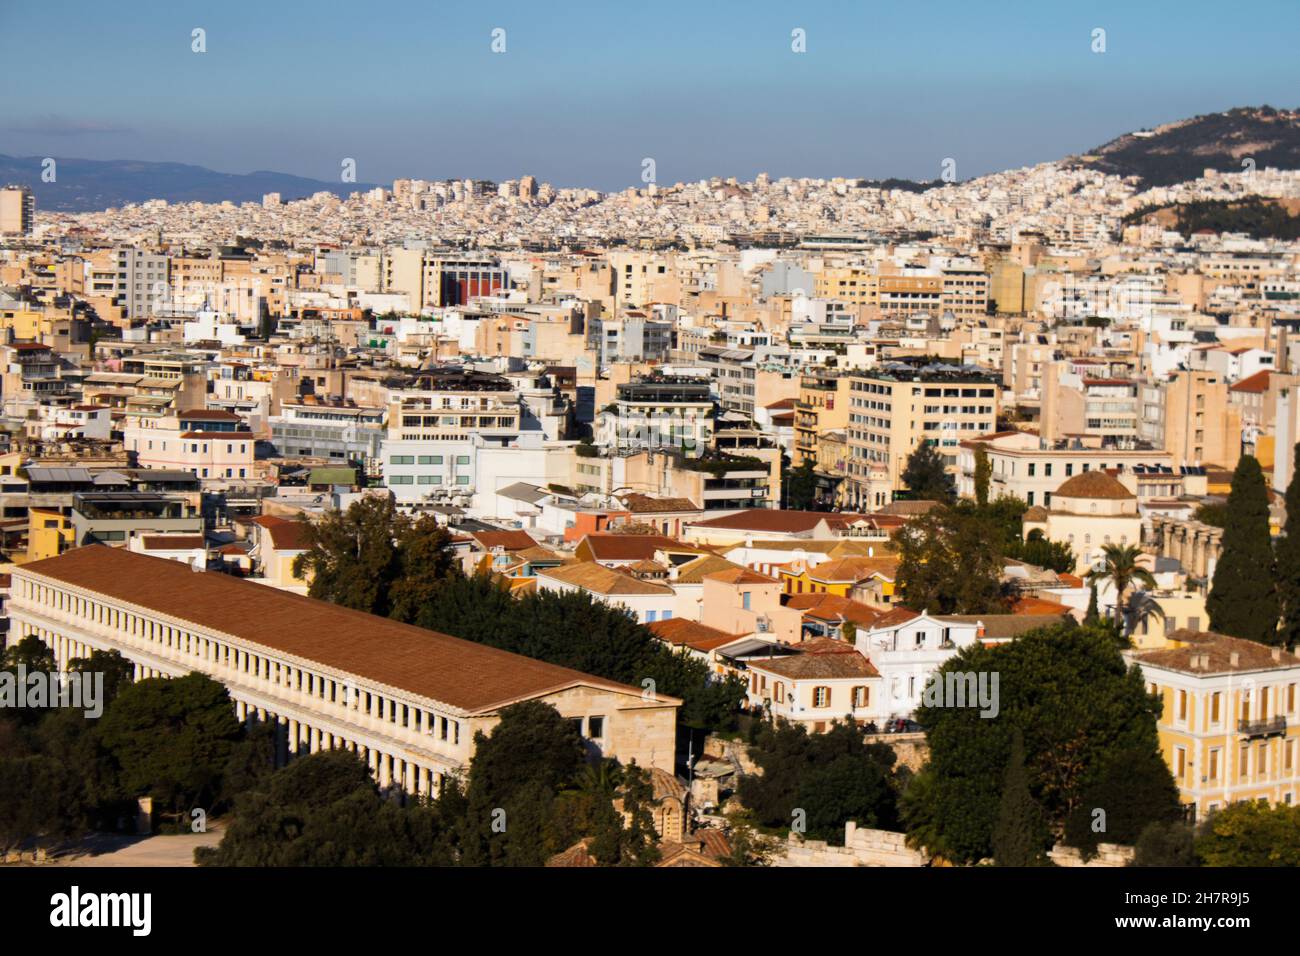 Atenas, Grecia - 22 de noviembre de 2021 Vista panorámica de edificios y paisajes urbanos de Atenas, ciudad emblemática y capital de Grecia Foto de stock